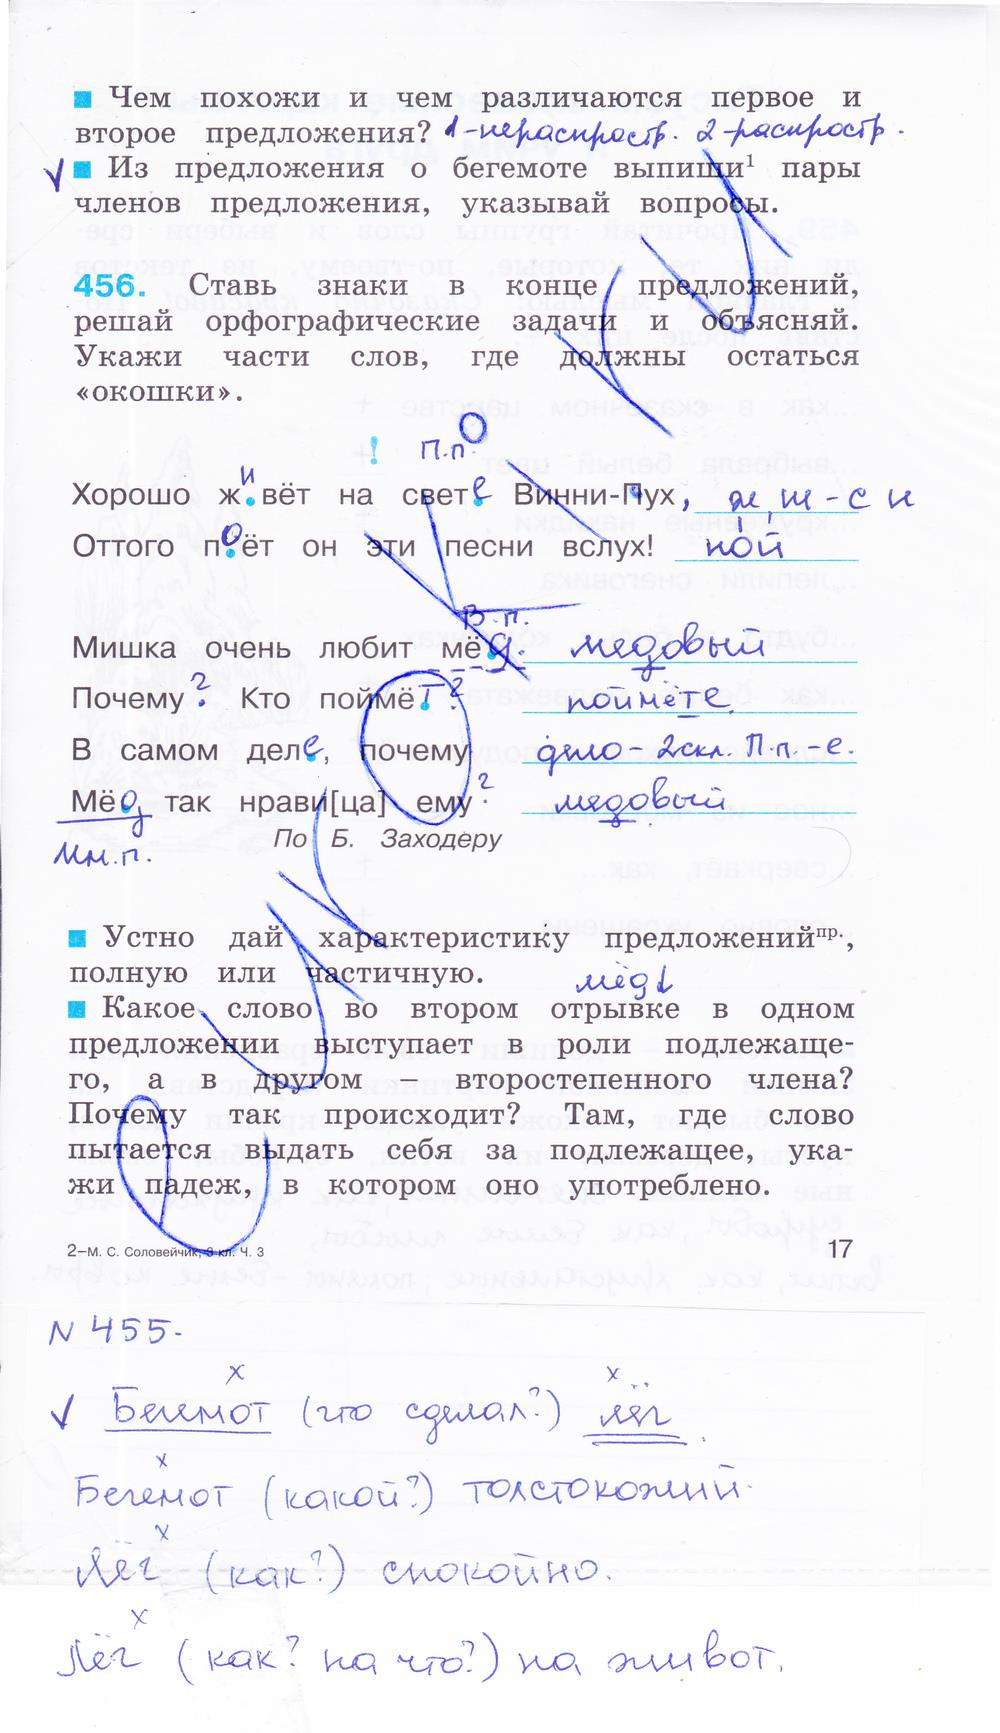 гдз 3 класс рабочая тетрадь часть 3 страница 17 русский язык Соловейчик, Кузьменко